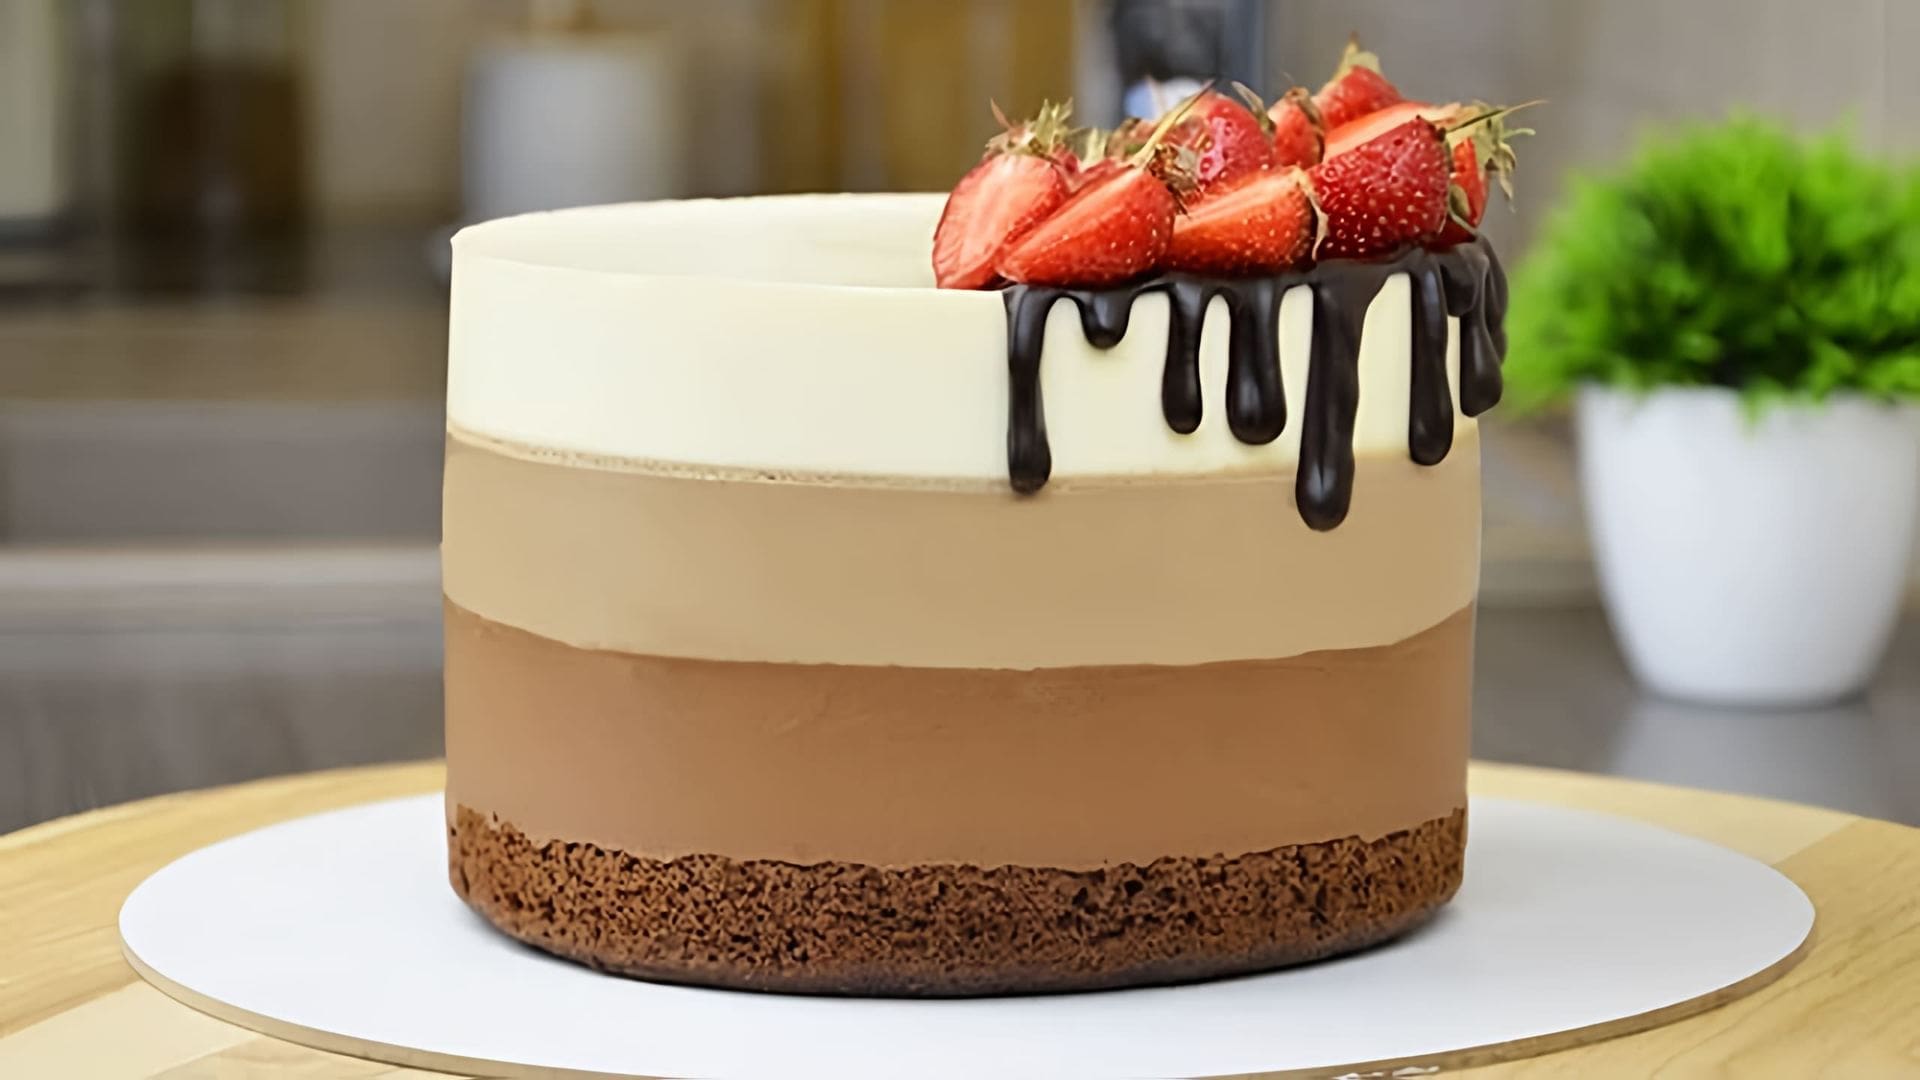 В этом видео демонстрируется рецепт муссового торта "Три шоколада"